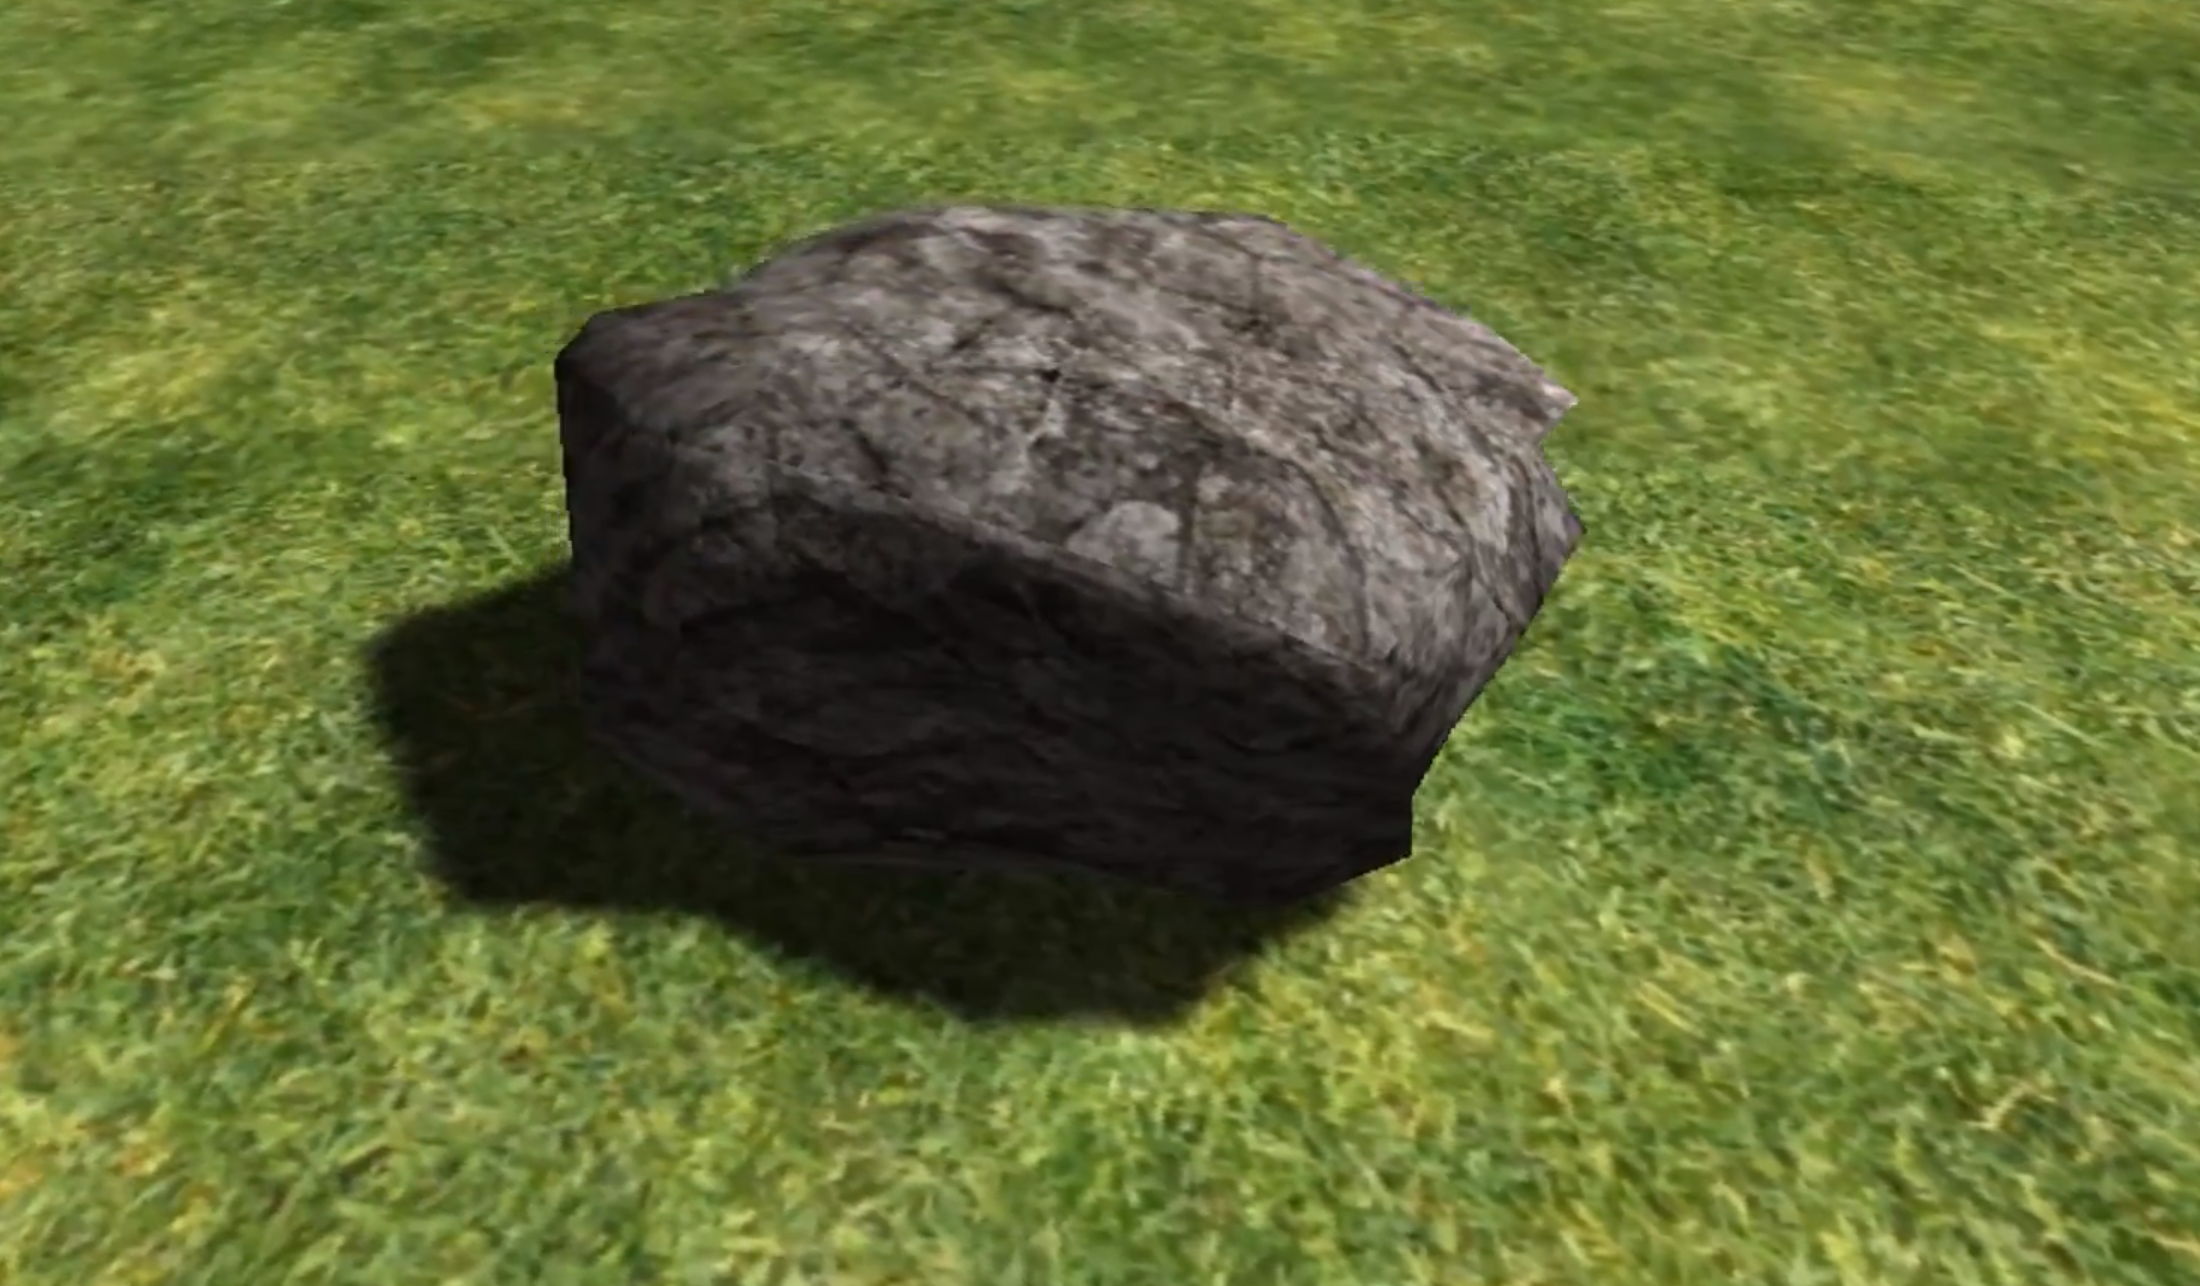 Stone simulator. Симулятор булыжника. Камень из игры. Камень игровой. Камень из симулятора камня.